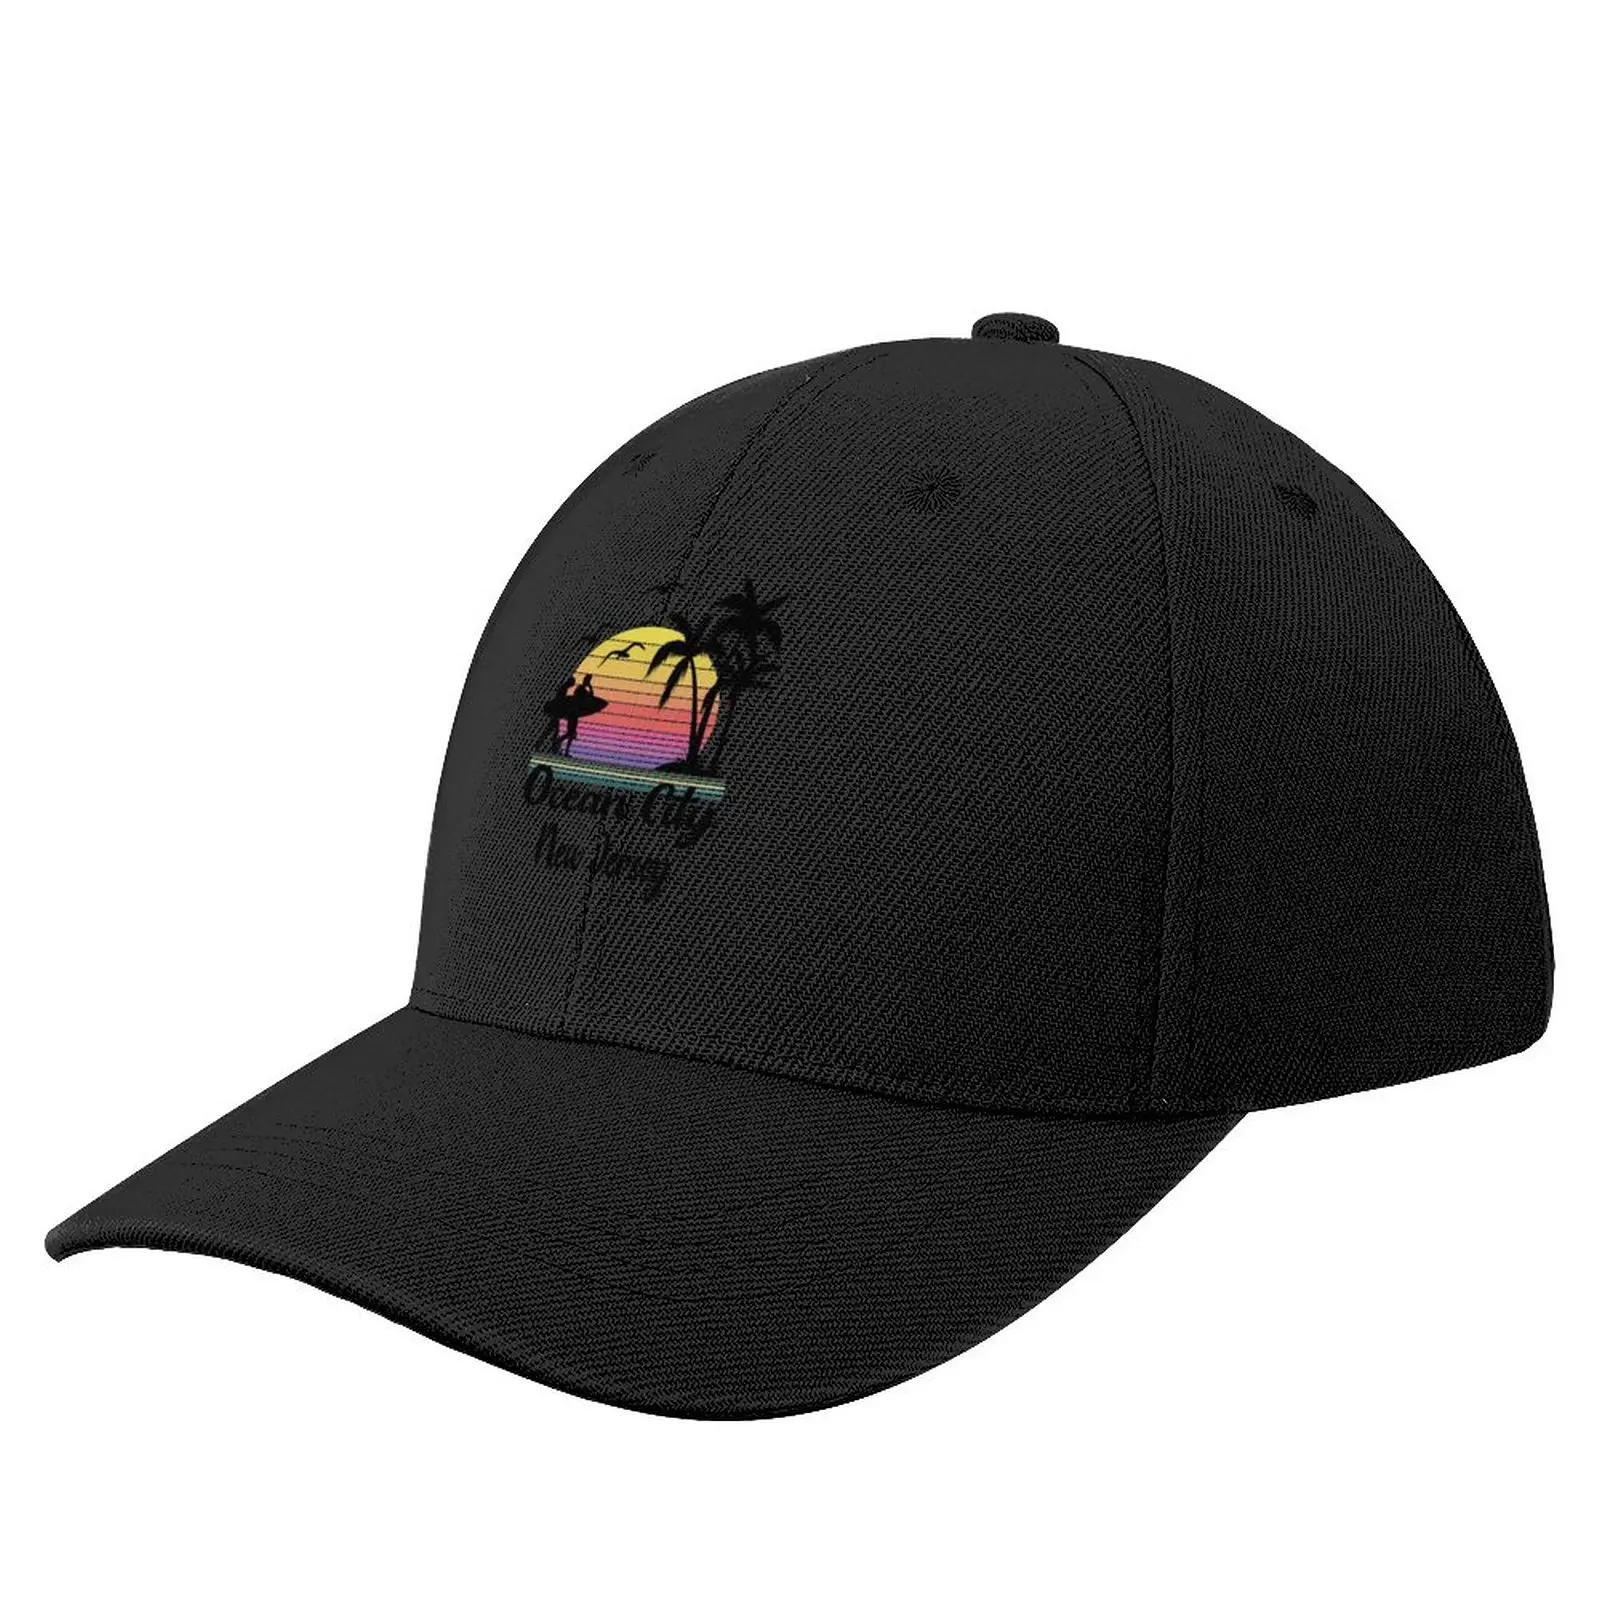 

Ocean City New Jersey Seaside Retro Sunset Baseball Cap Golf Wear Golf Hat Male Women's